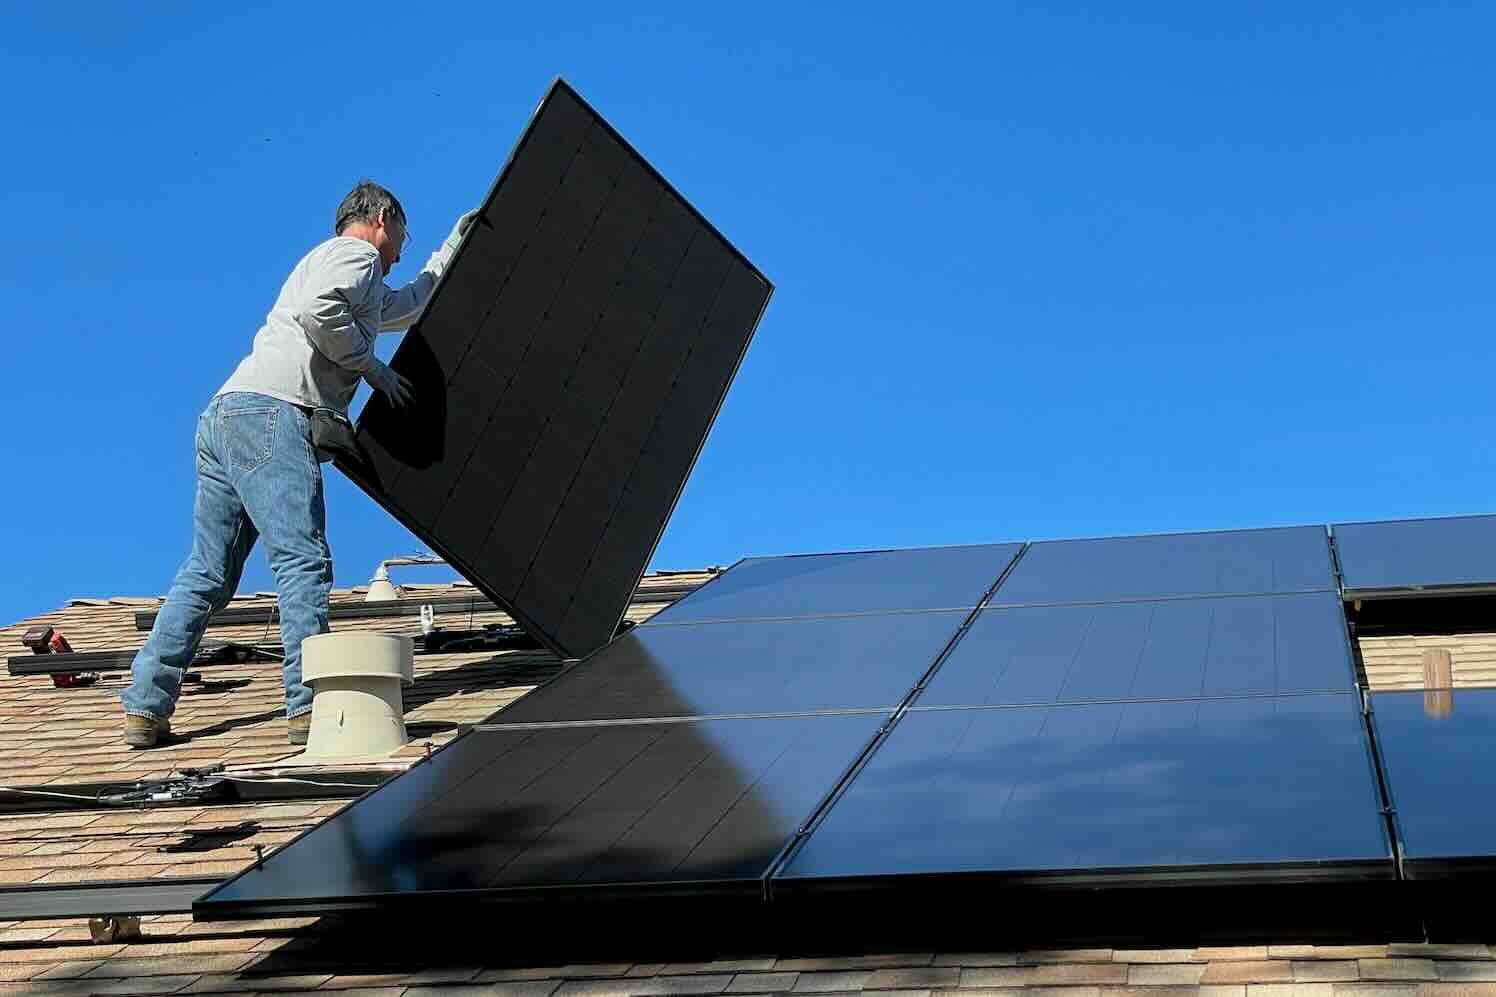 De rol van zonnepanelen monteurs in duurzame energie installatie